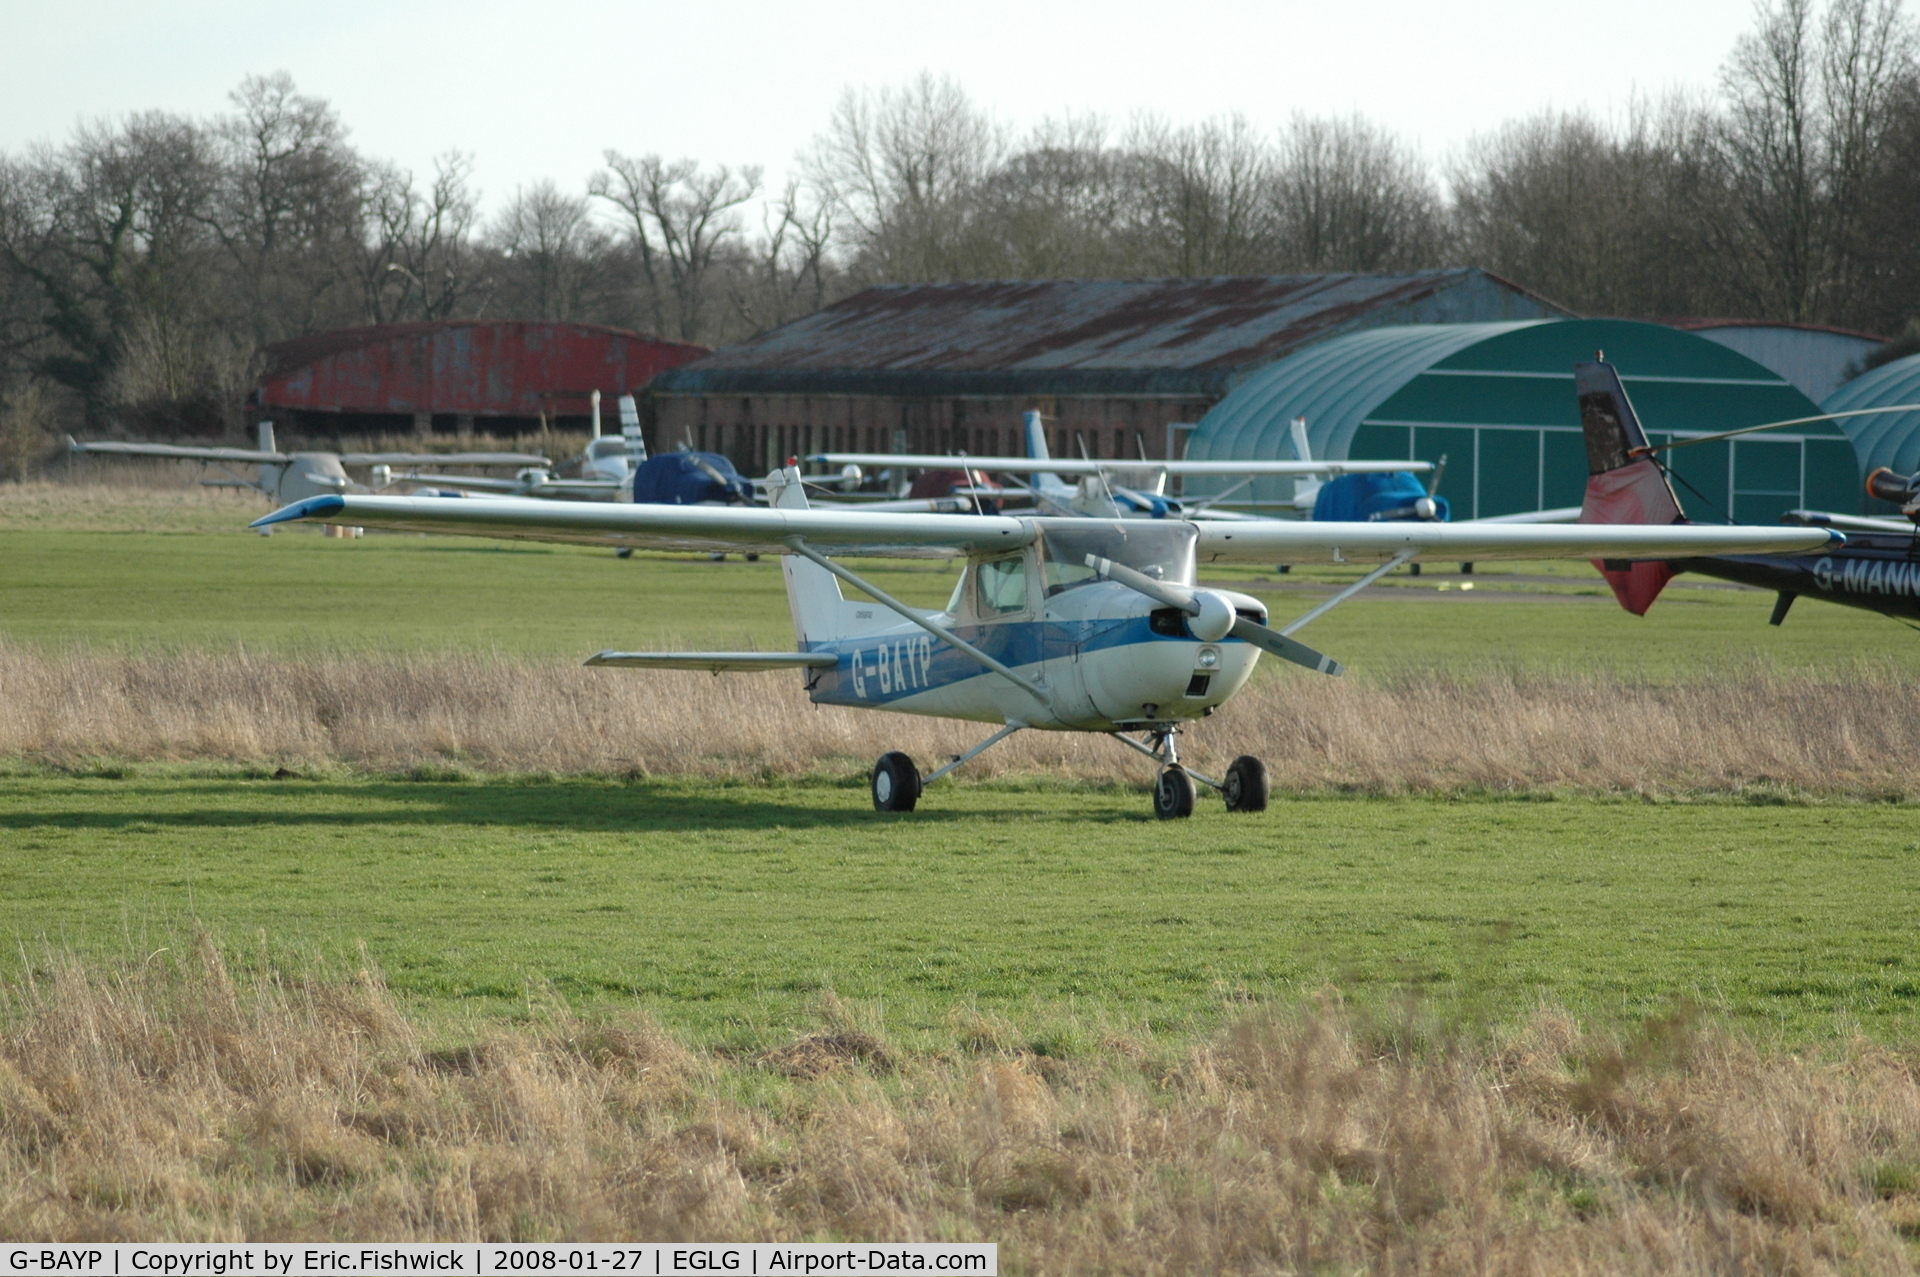 G-BAYP, 1973 Cessna 150L C/N 150-74017, 3. G-BAYP At Panshanger Airfield